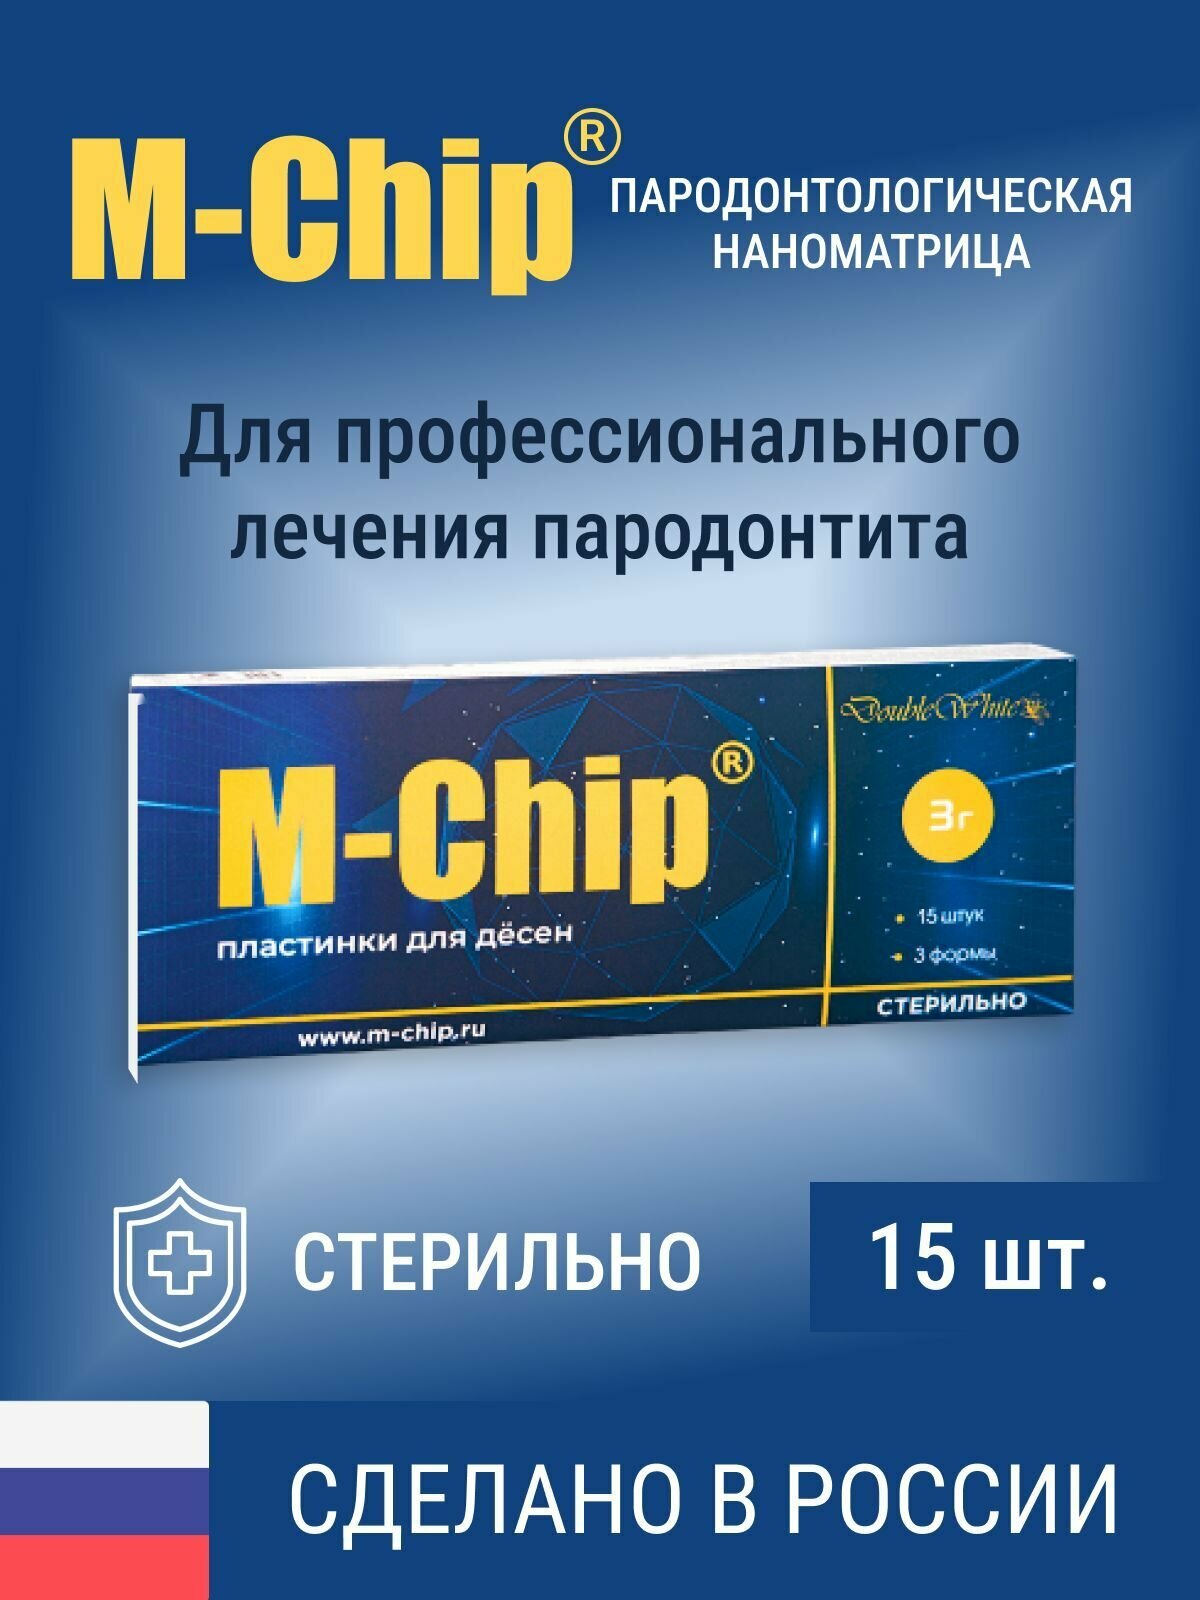 M-Chip наноматрица 15 штук для профессионального лечения пародонтита, Double White, Россия